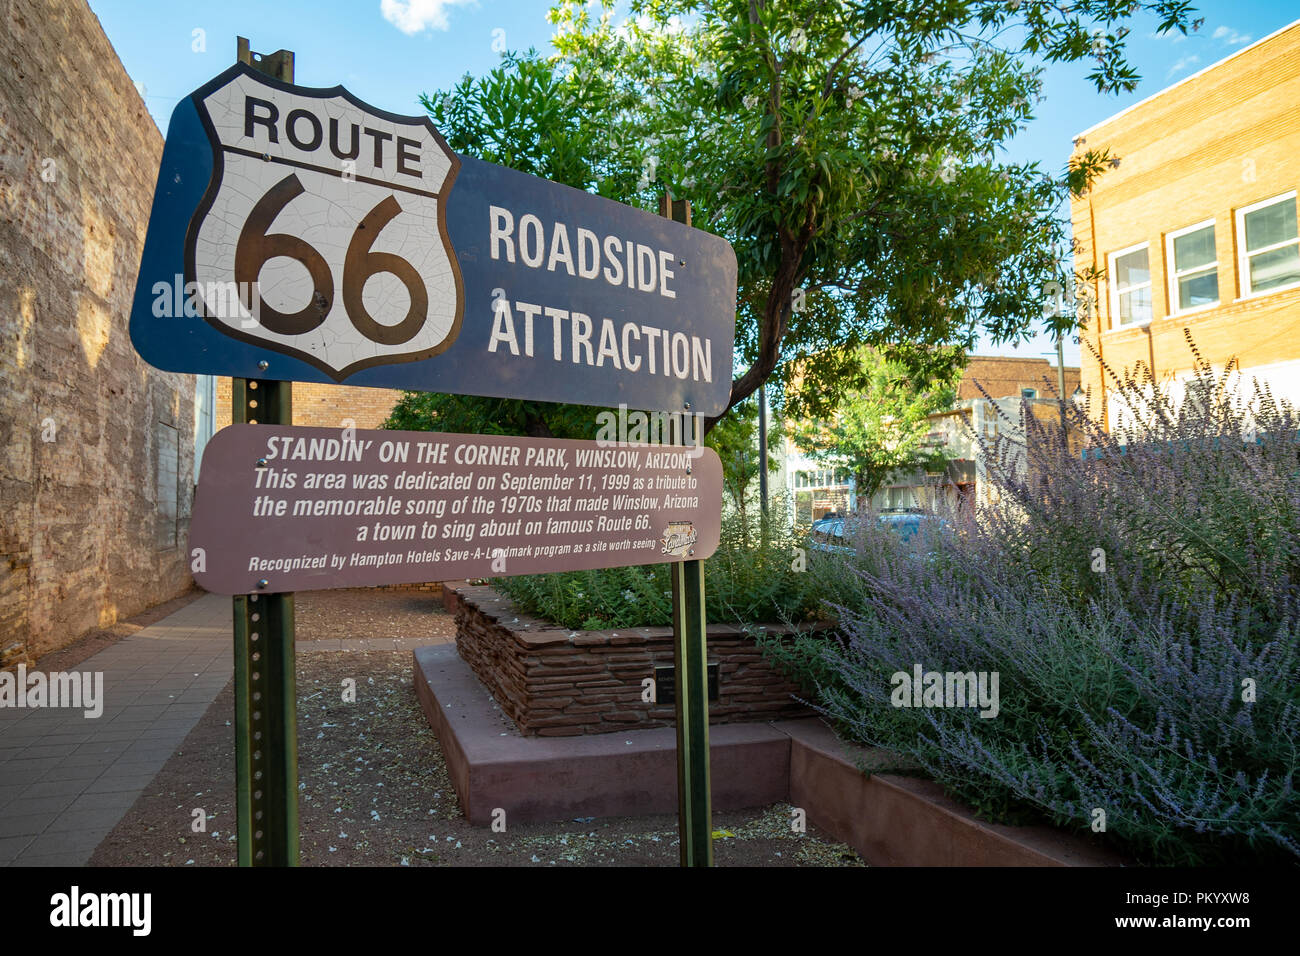 Route 66 am Straßenrand Attraktion Zeichen für Standin" an der Ecke Park in Winslow Arizona ehrt die Adler Take It Easy Song Stockfoto